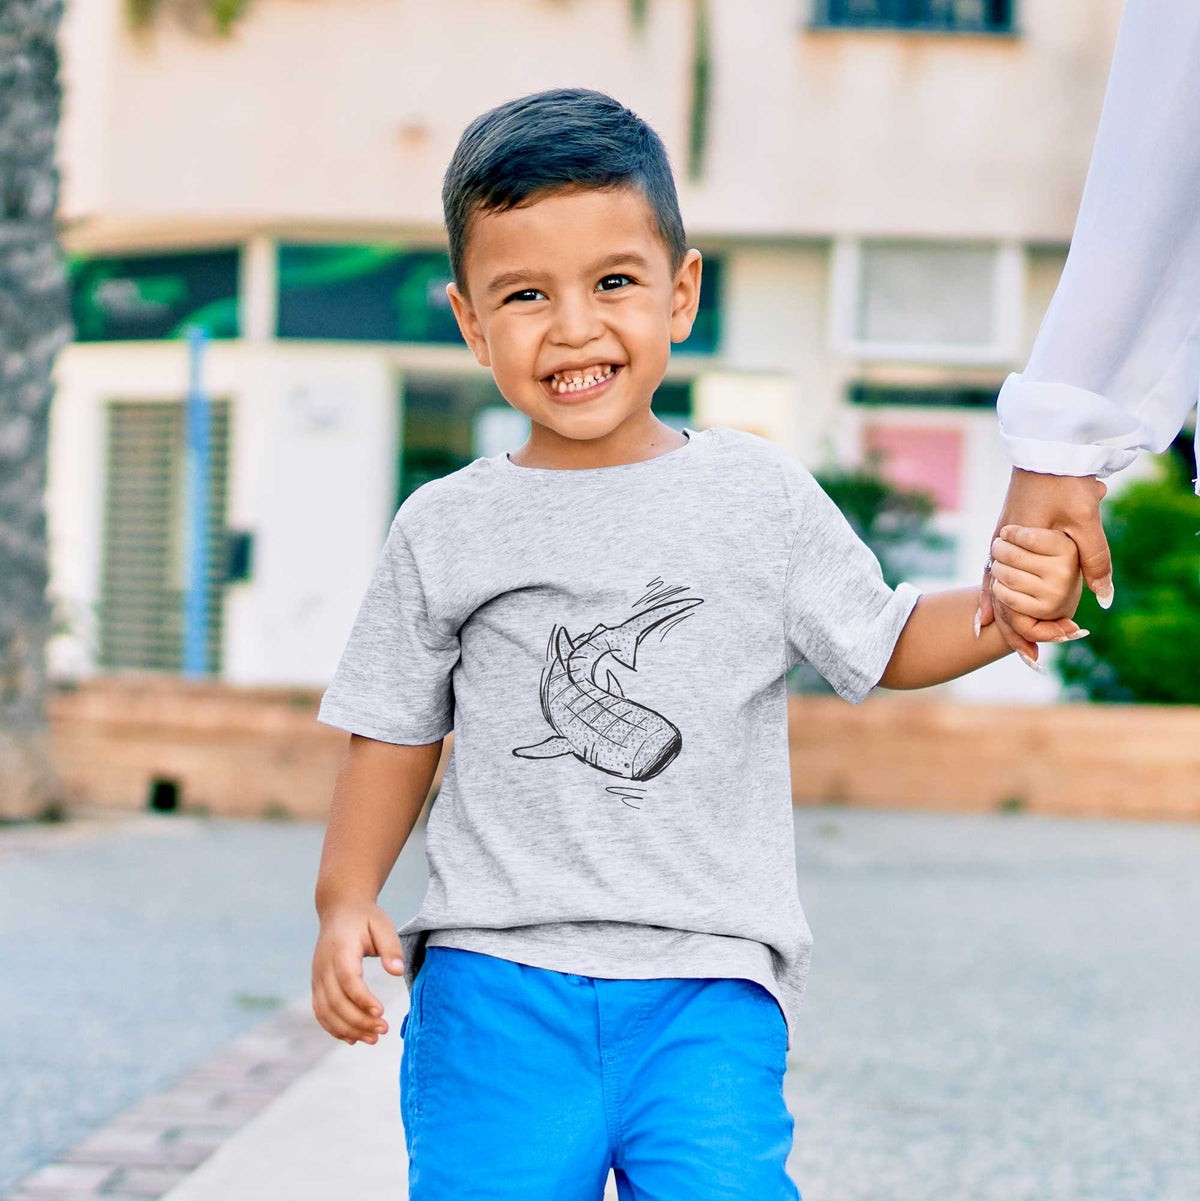 Whale Shark - Kids Shirt